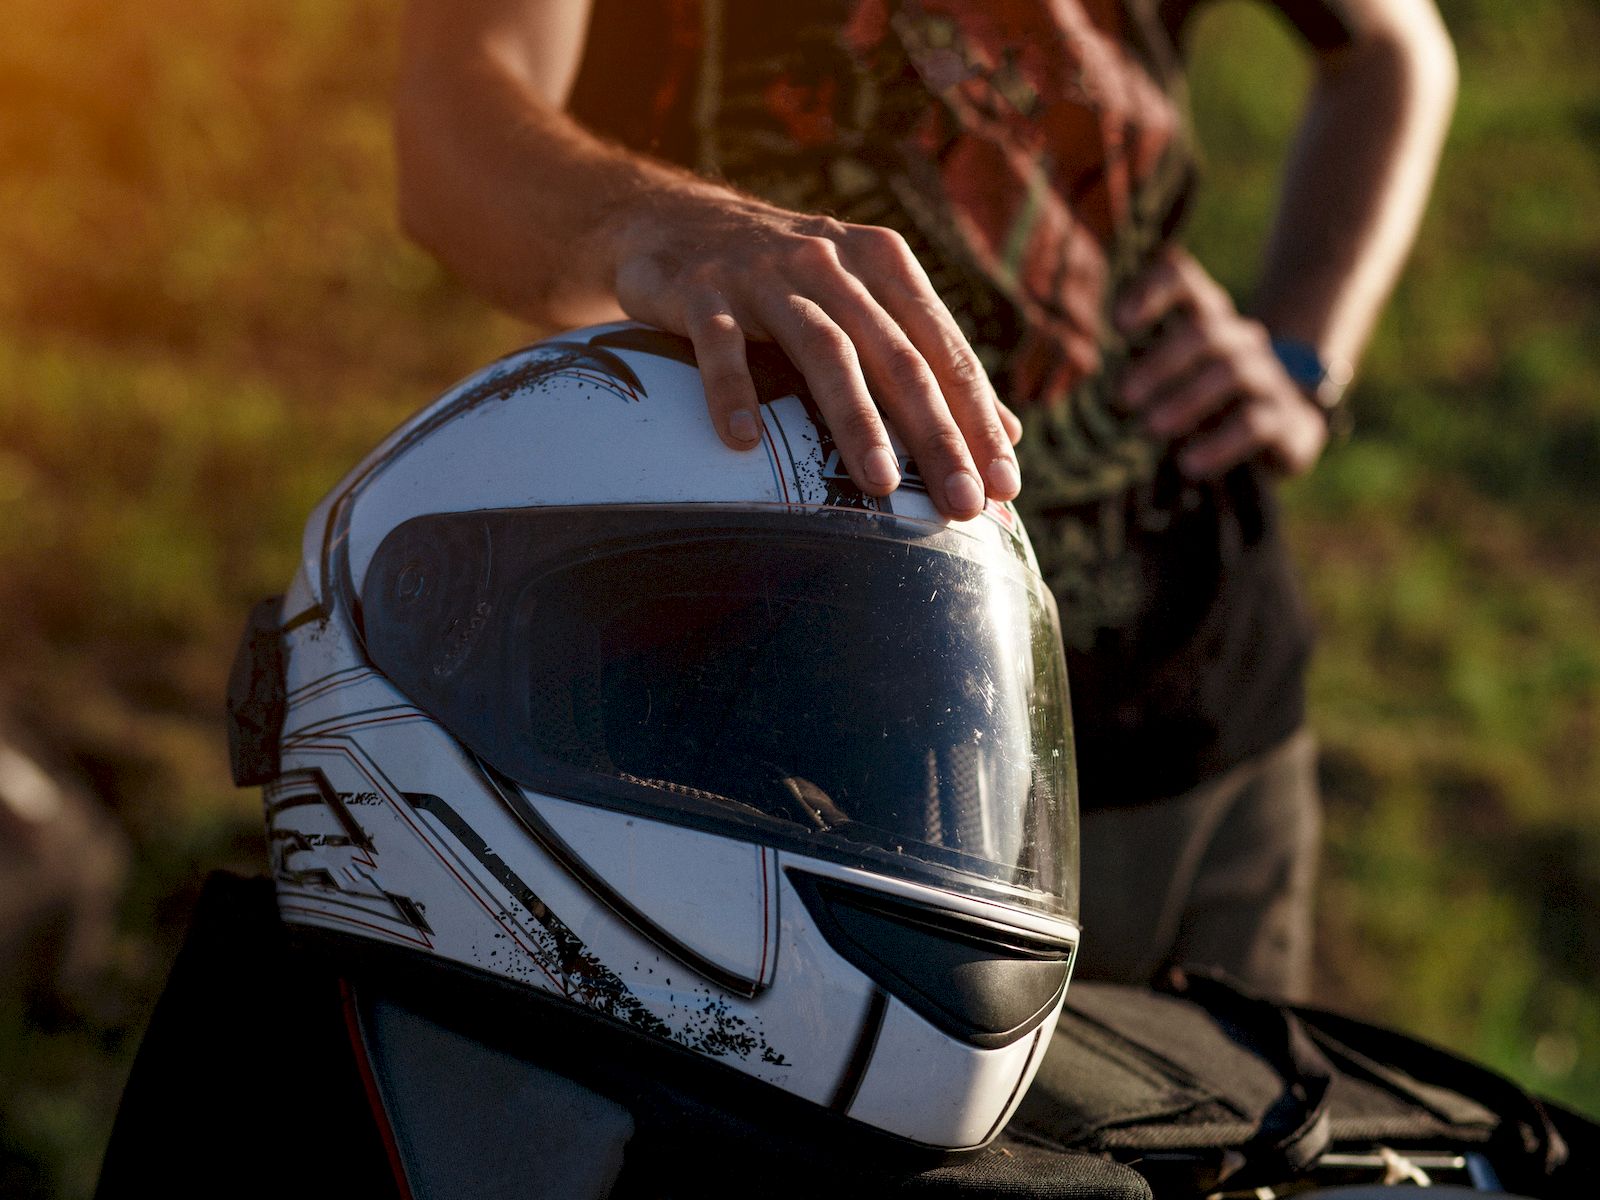 Cómo pintar casco de moto? - Kartal 24